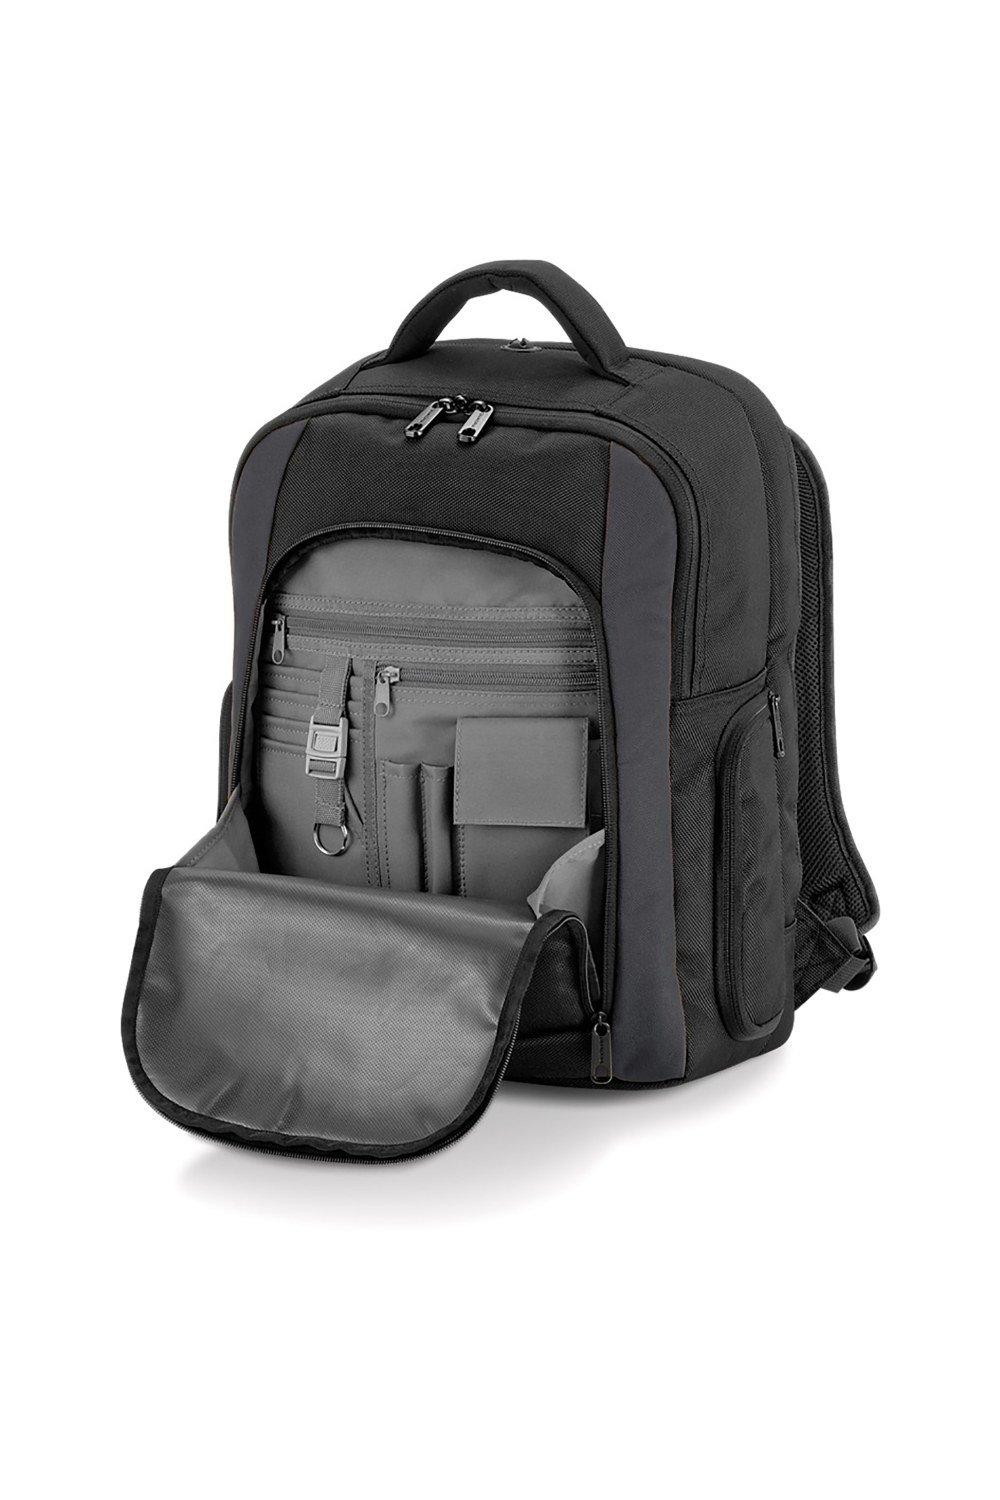 Рюкзак для ноутбука из вольфрама - 23 литра Quadra, черный мате cbse silueta 500 г